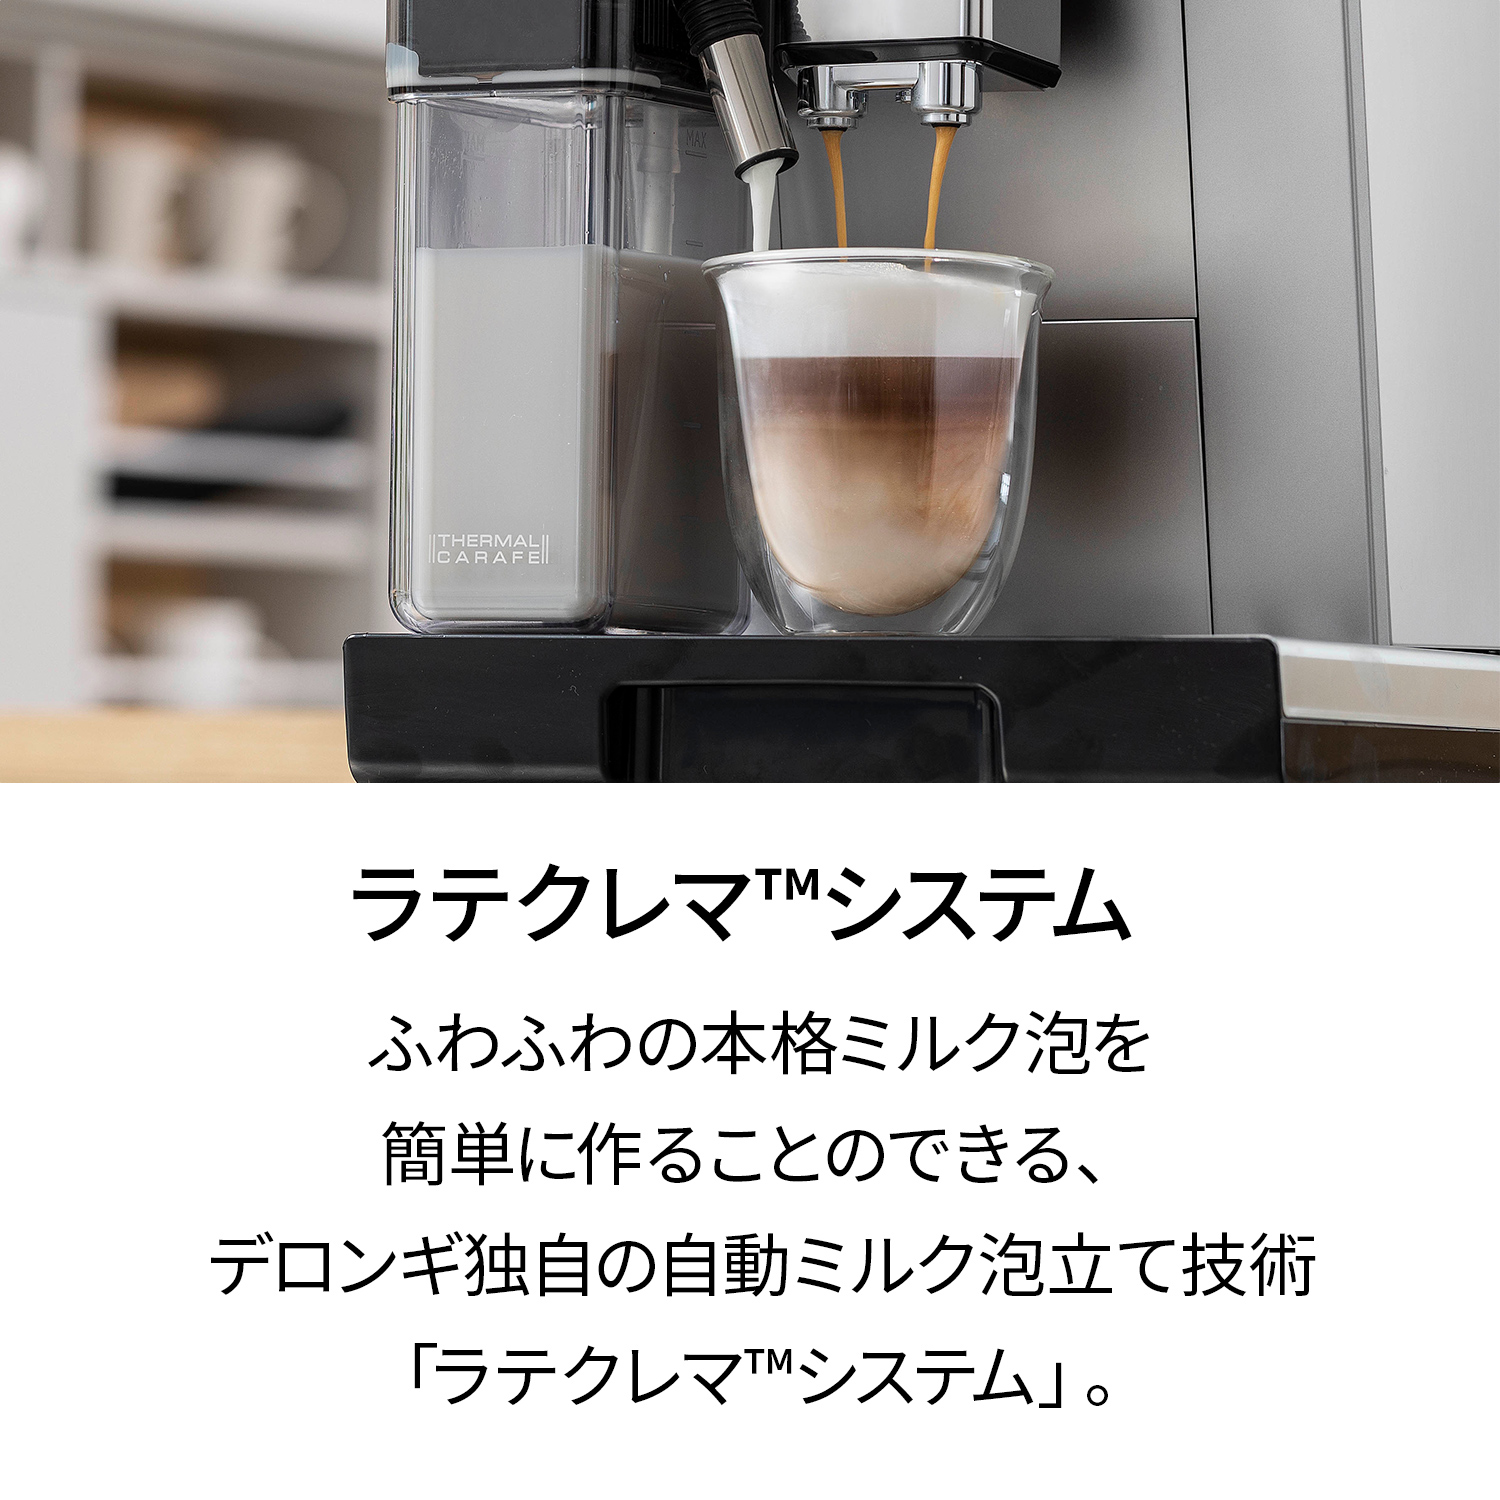 デロンギ プリマドンナクラス 全自動コーヒーマシン [ECAM55085MS 